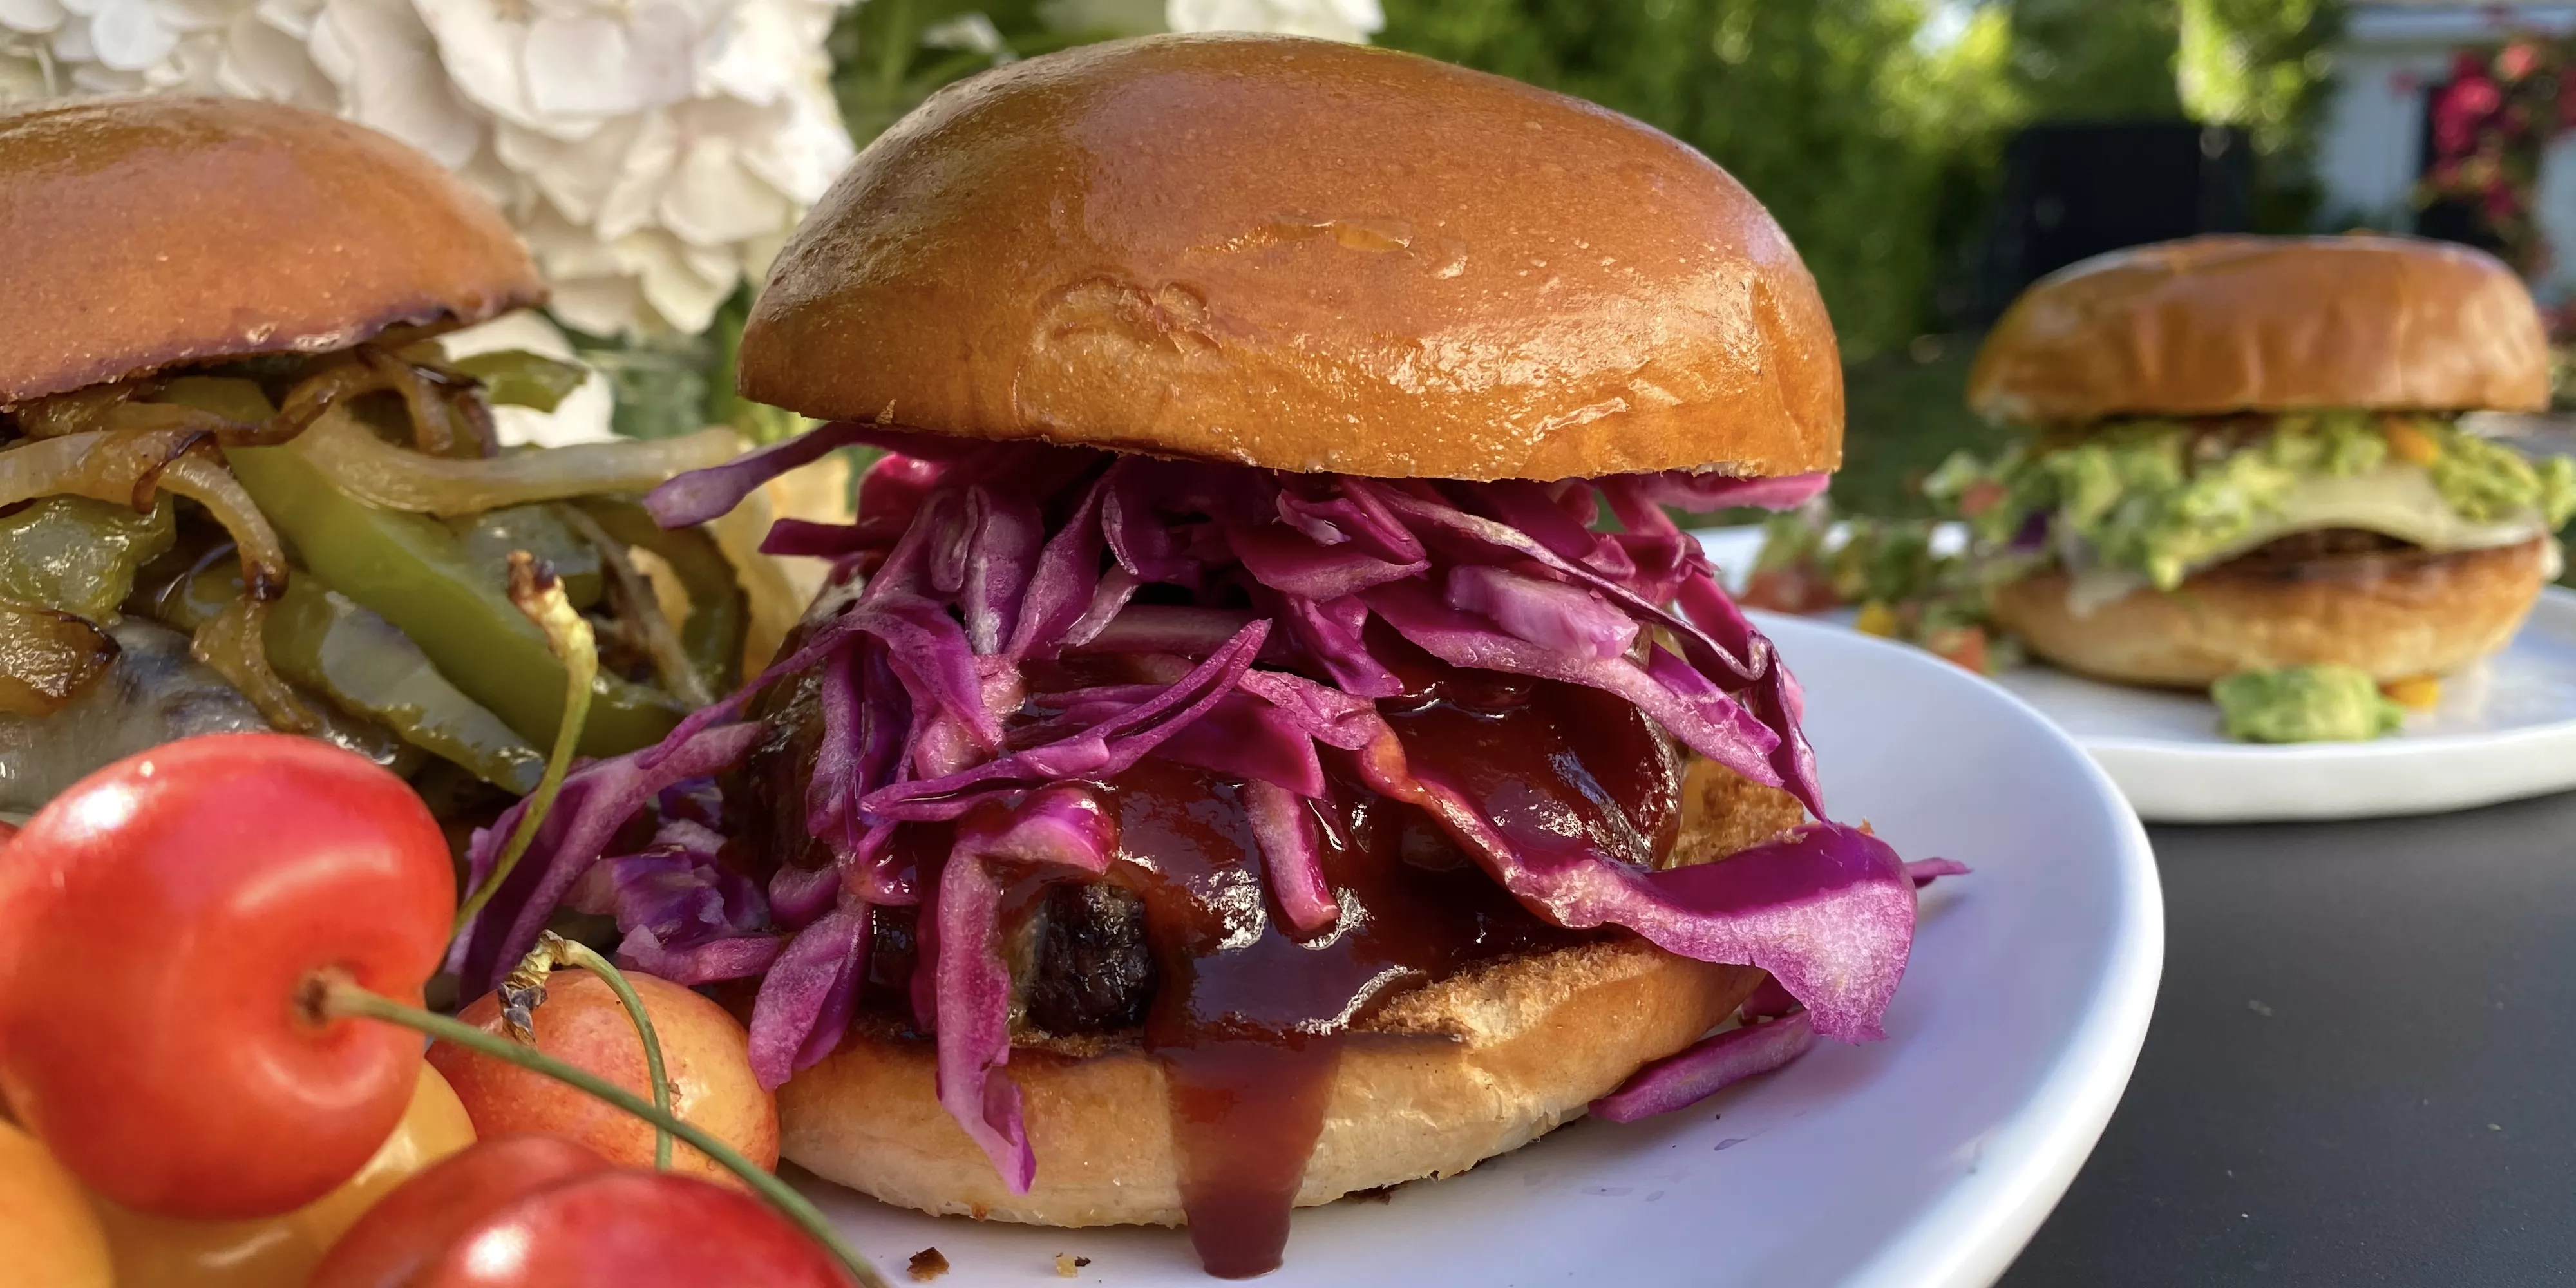 Thredbo Burger Bar at Knickerbocker in Australia, Australia and Oceania | Restaurants - Rated 3.6